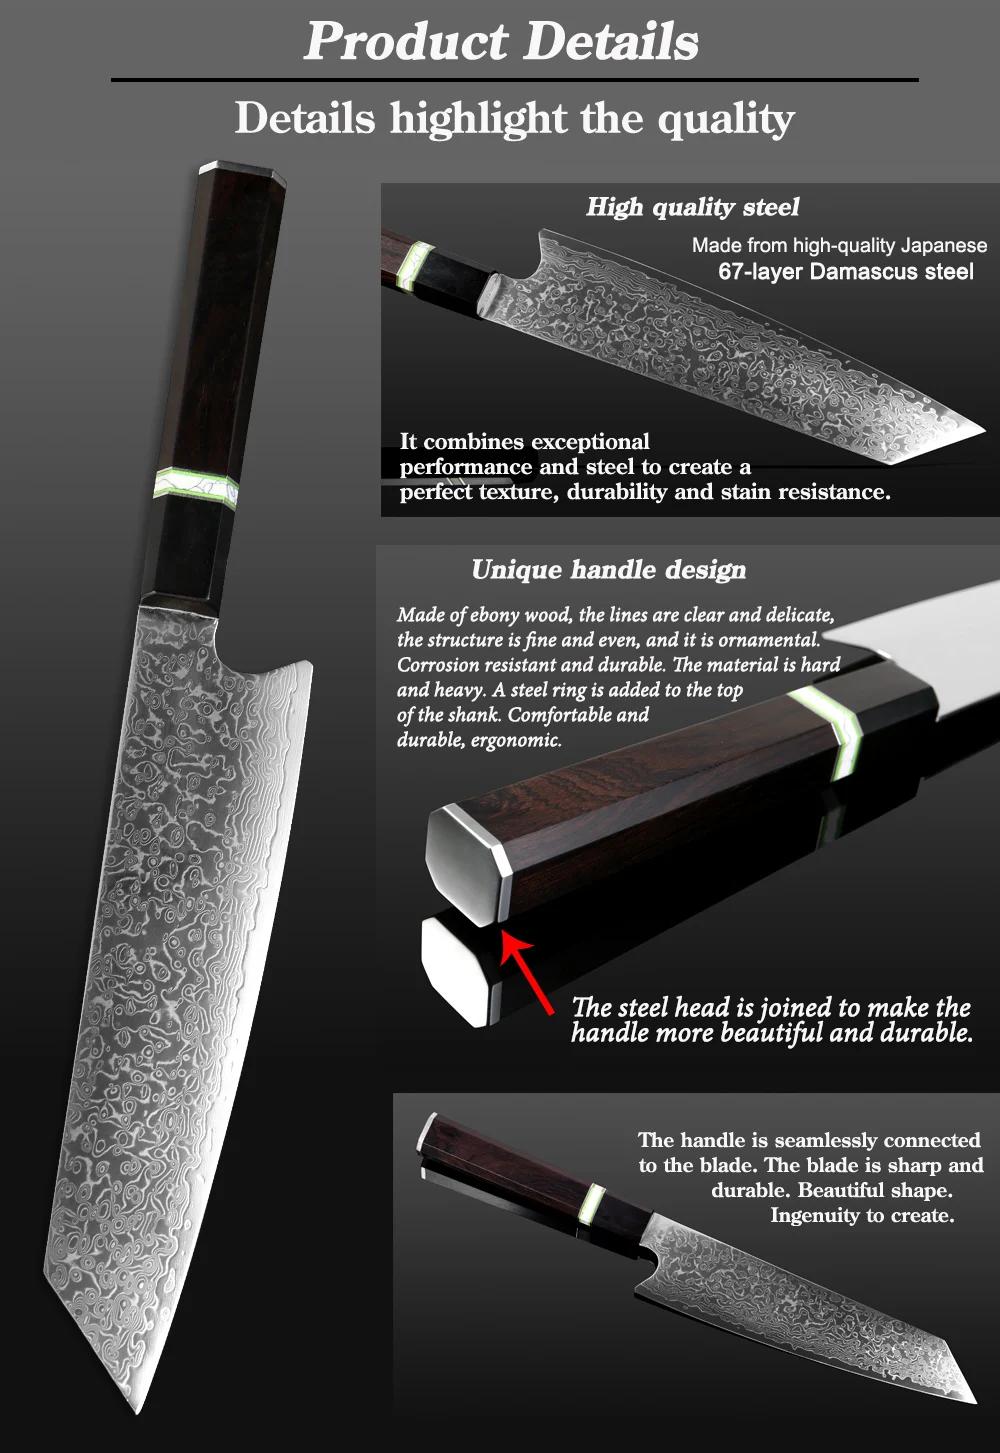 XITUO дамасский стальной поварской нож Профессиональный кухонный нож для нарезки киритсуке гьюто Кливер овощные ножи восьмиугольная ручка